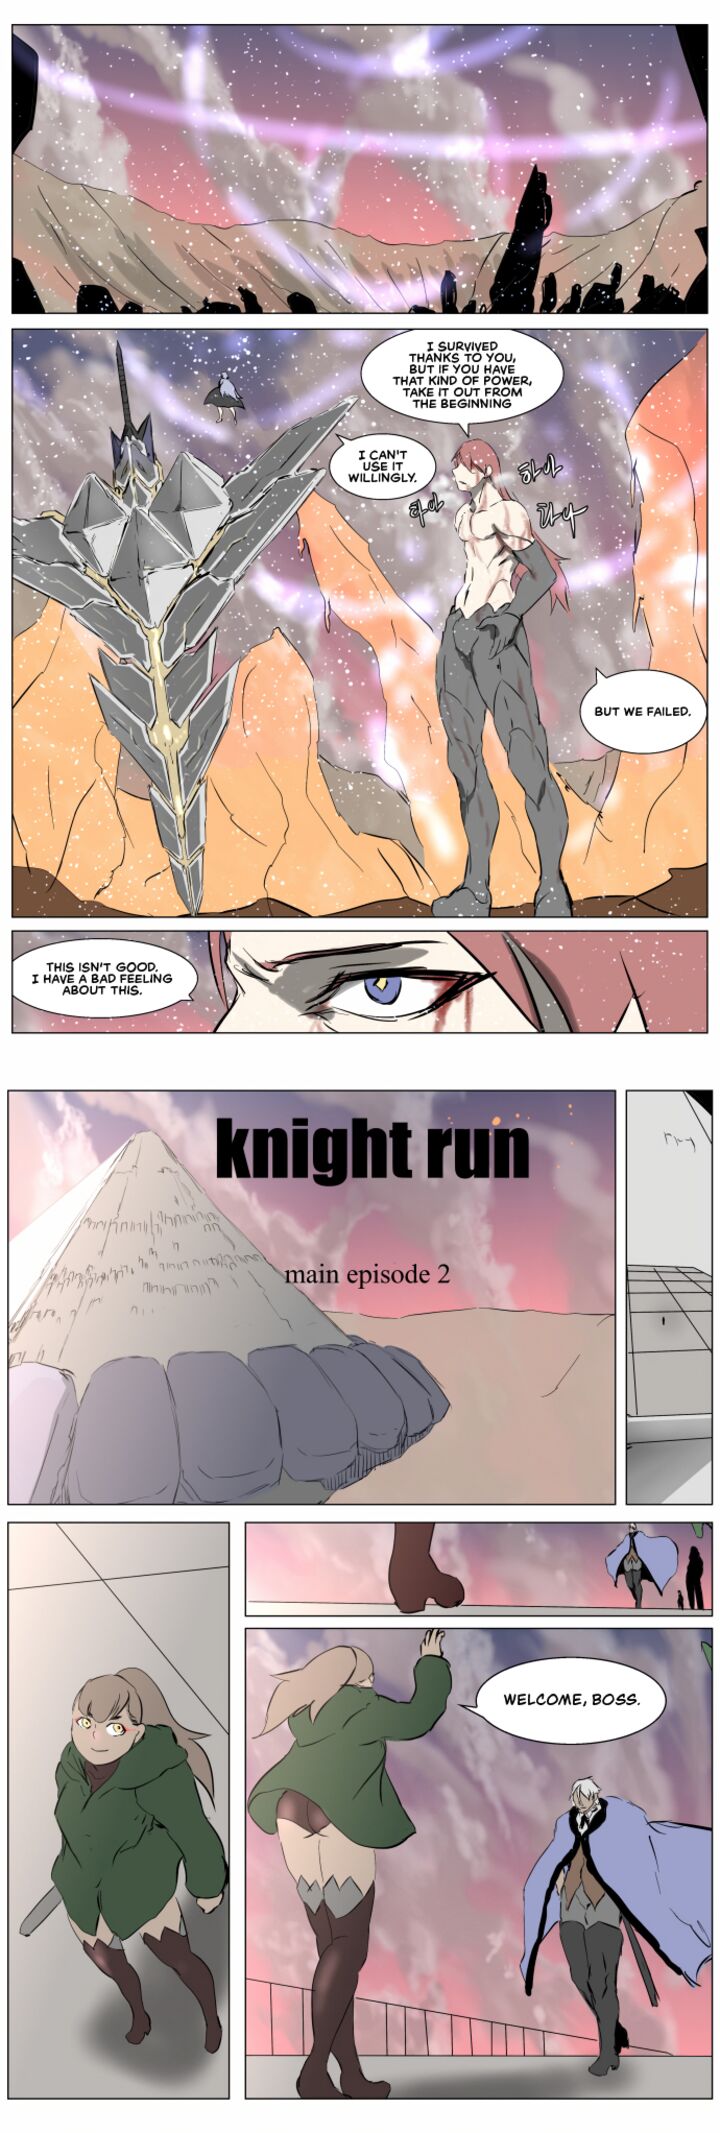 Knight Run 258 23